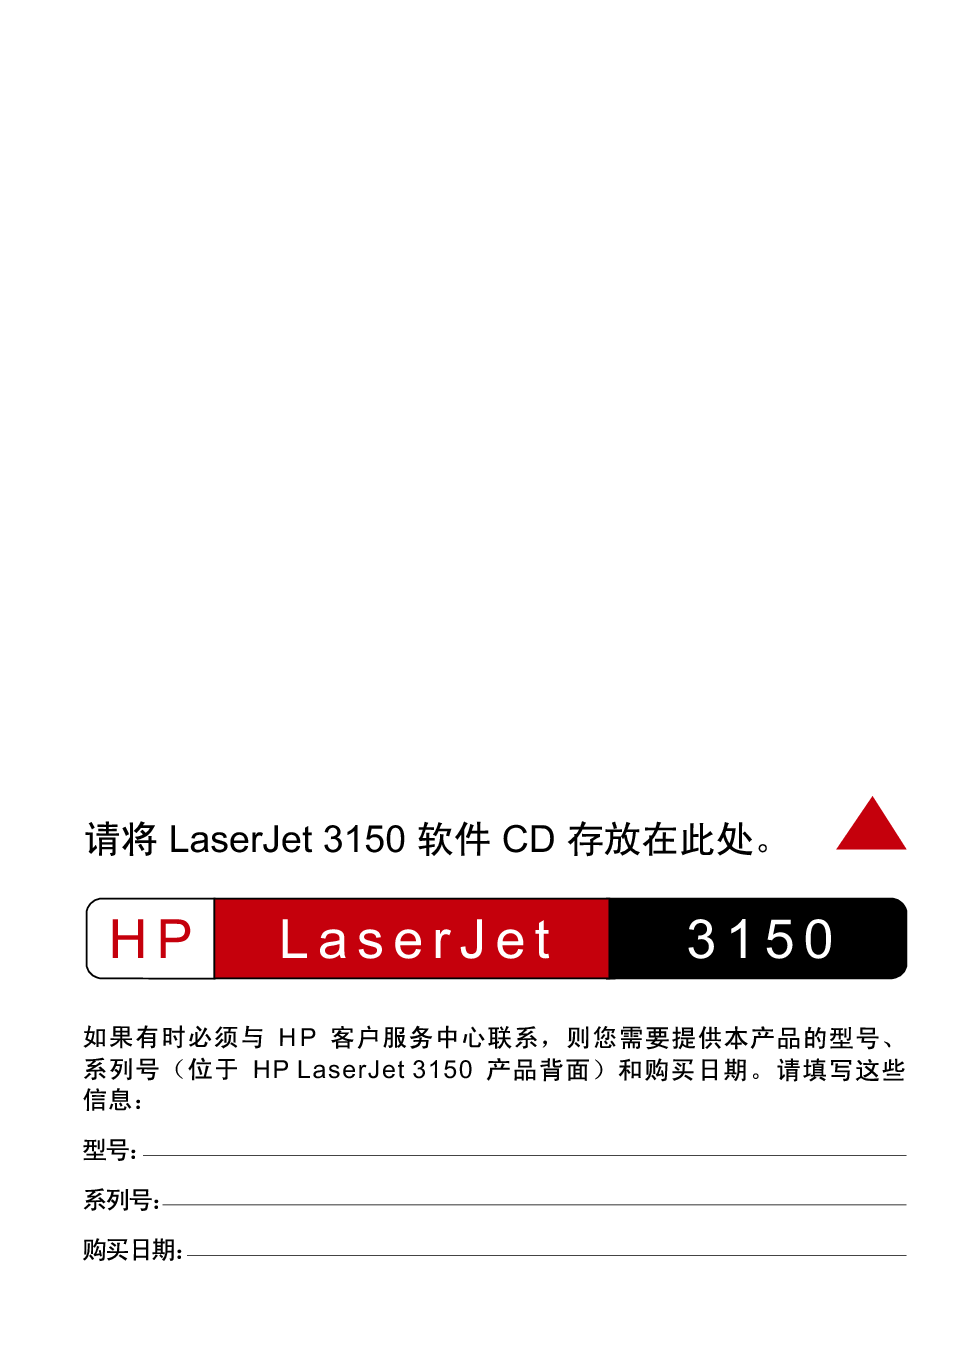 惠普 HP LaserJet 3150 快速入门指南 第1页